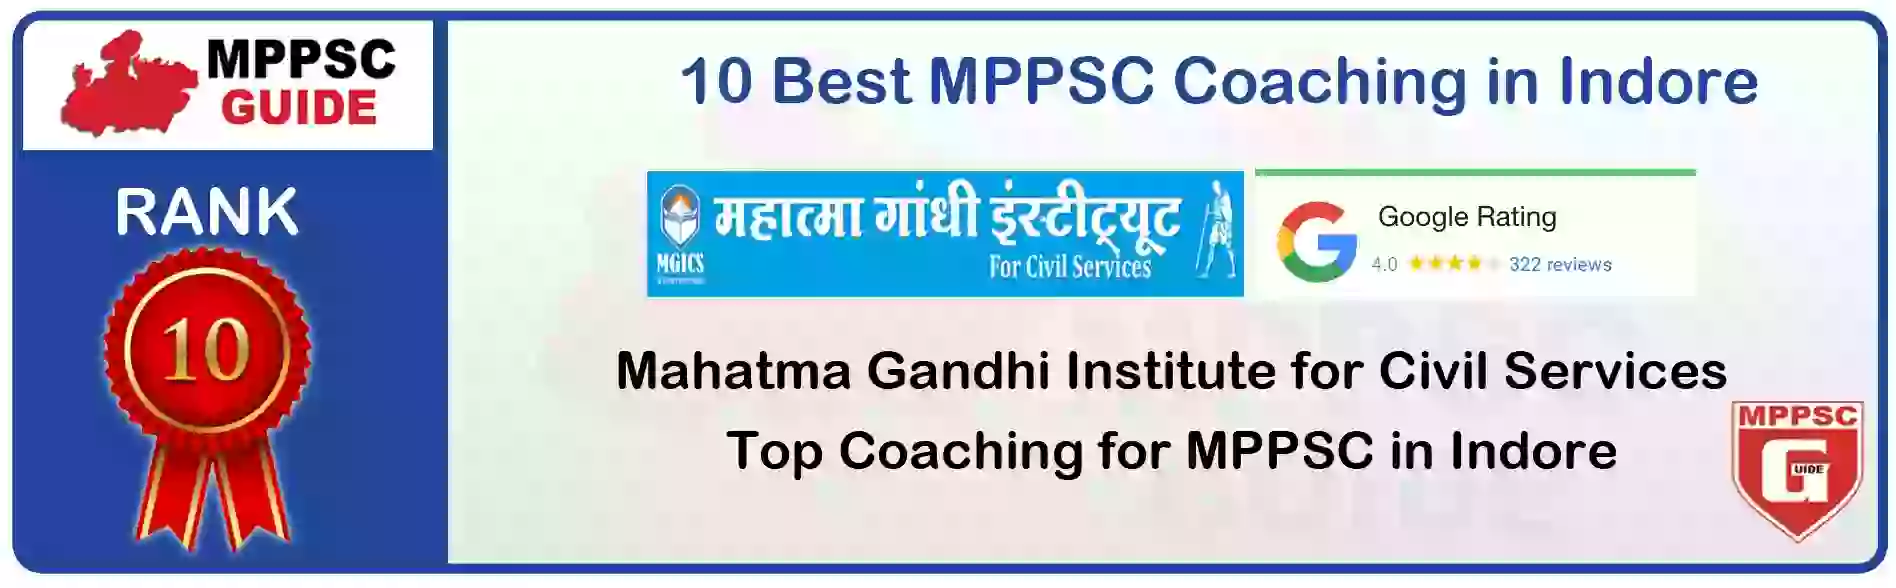 MPPSC Coaching in Sheopur, MPPSC Coaching Institute In Sheopur, Best MPPSC Coaching in Sheopur, Top 10 MPPSC Coaching In Sheopur, best mppsc coaching institute in sheopur, MPPSC Coaching Classes In Sheopur, MPPSC Online Coaching In Sheopur, mppsc coaching in Sheopur bhanwarkua